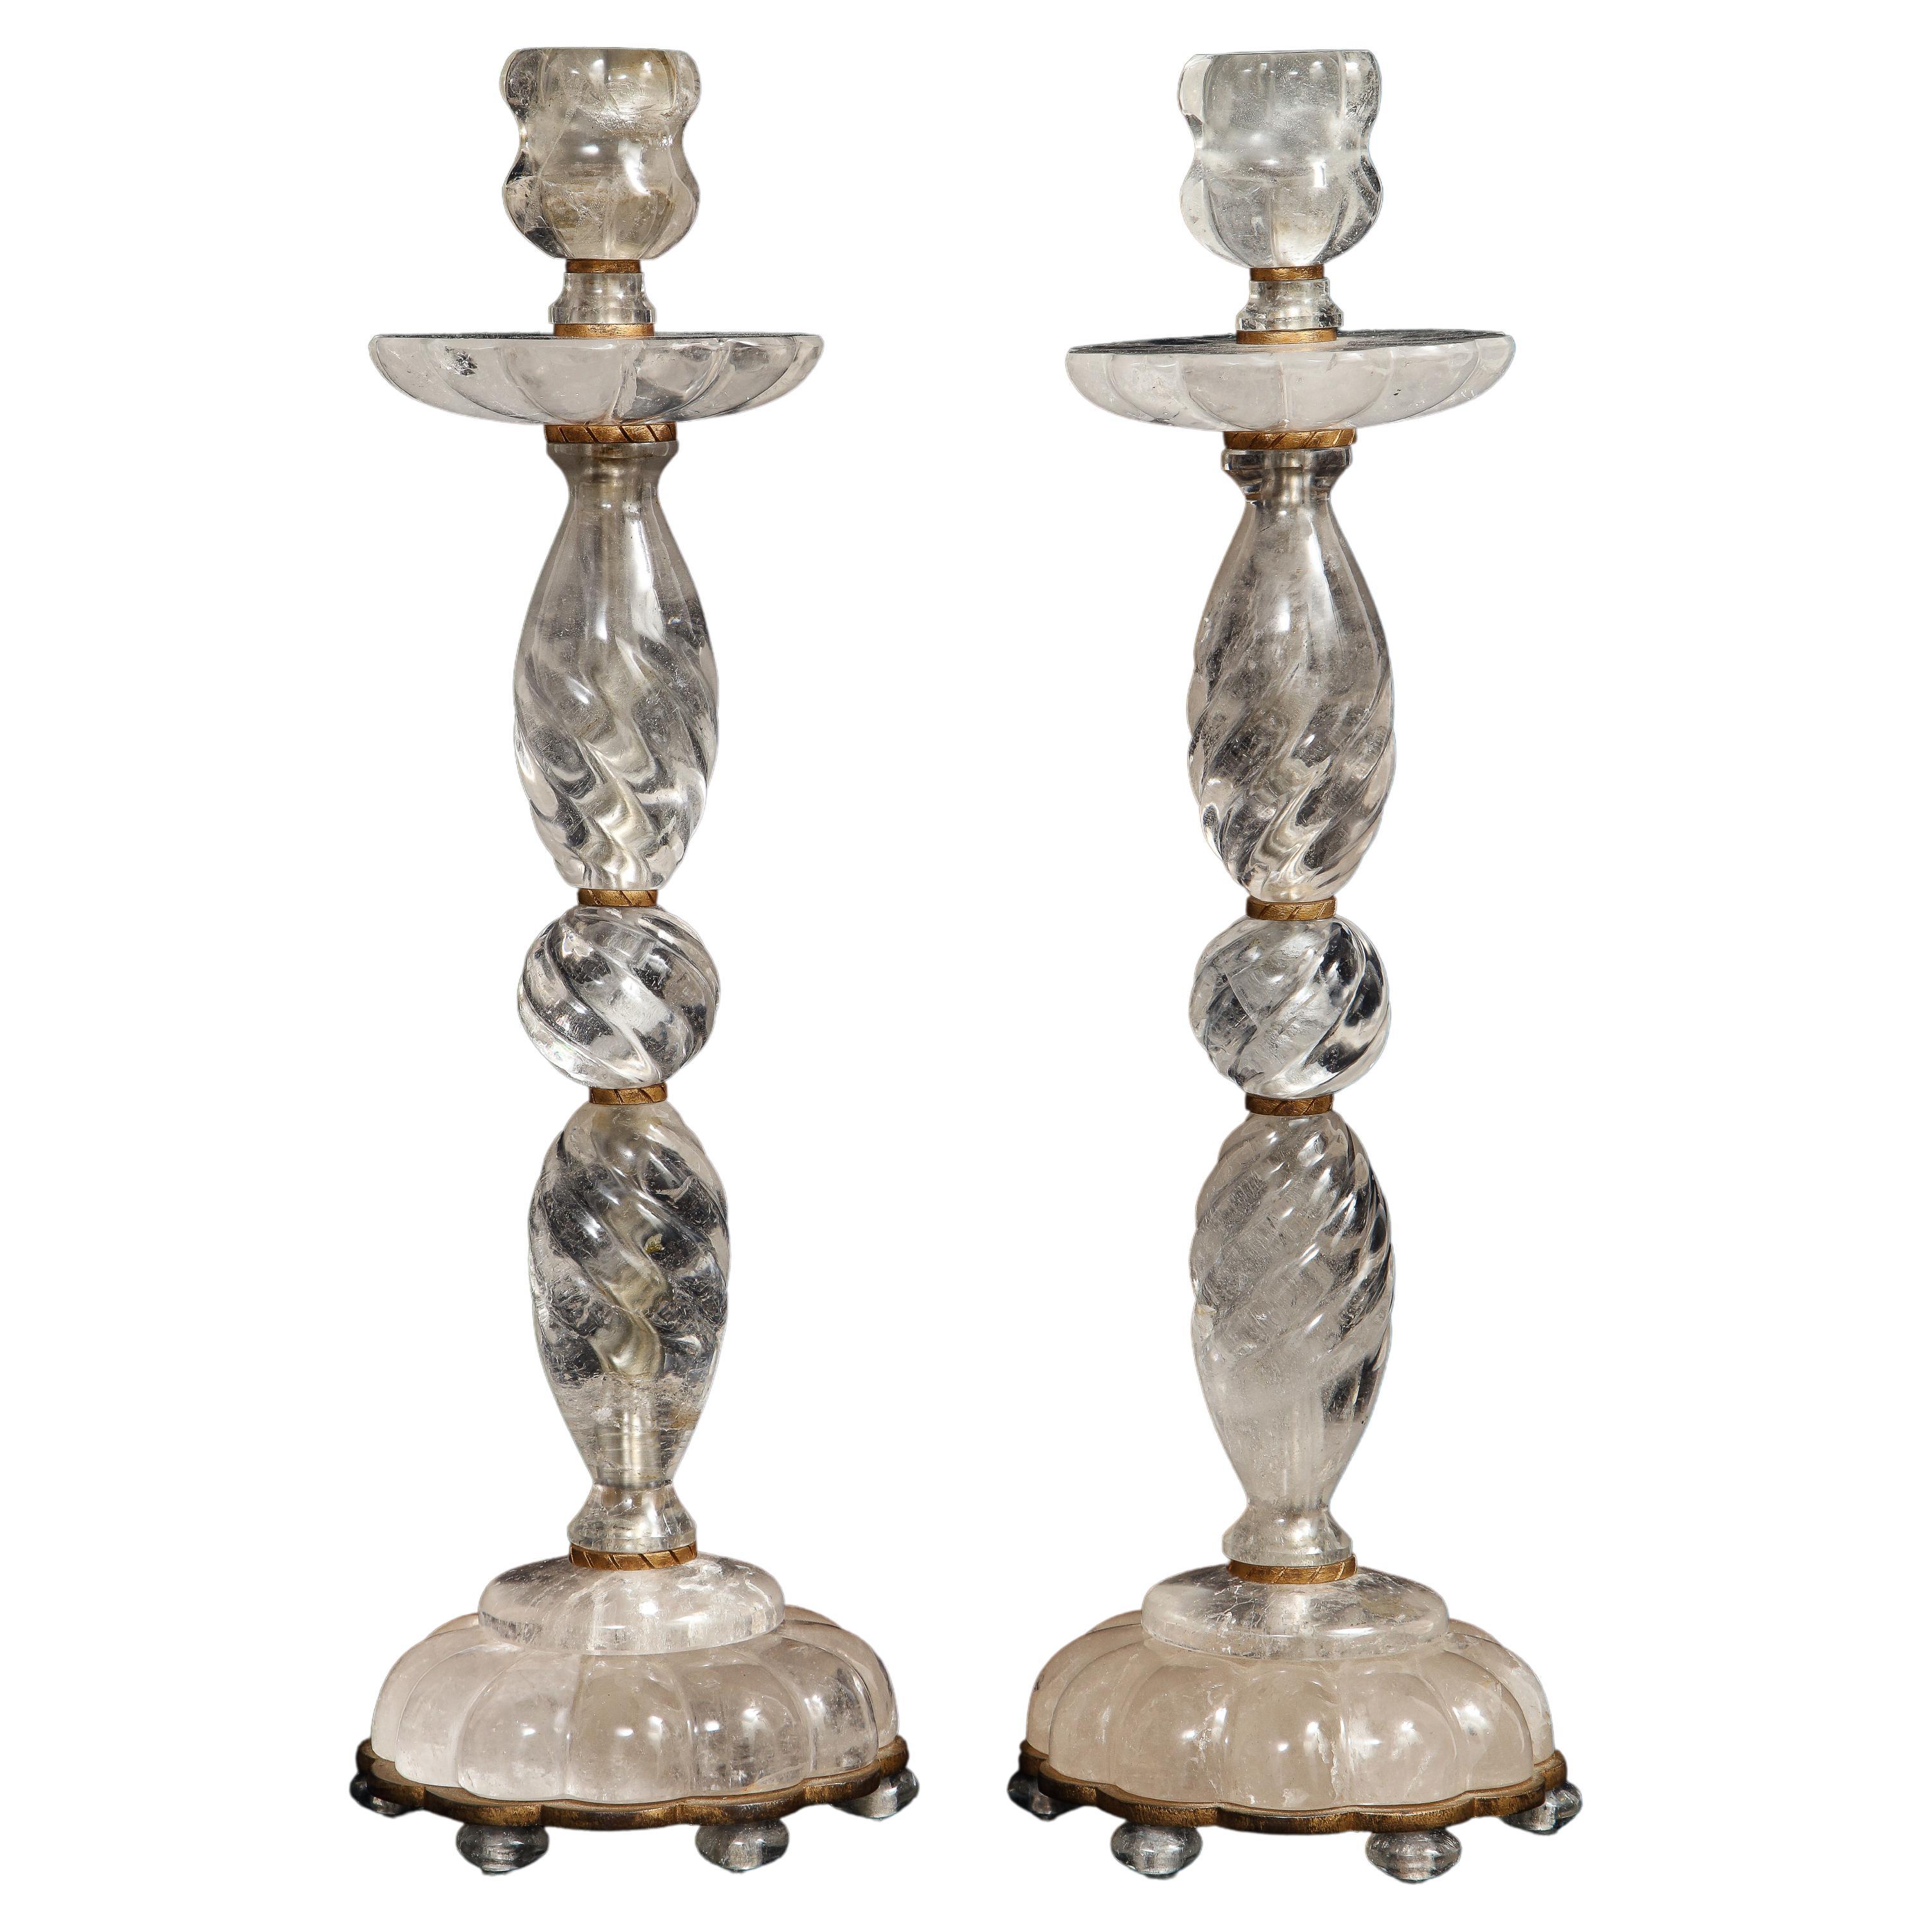 Paire de chandeliers français du milieu du siècle dernier en bronze montés sur des cristaux de roche sculptés à la main